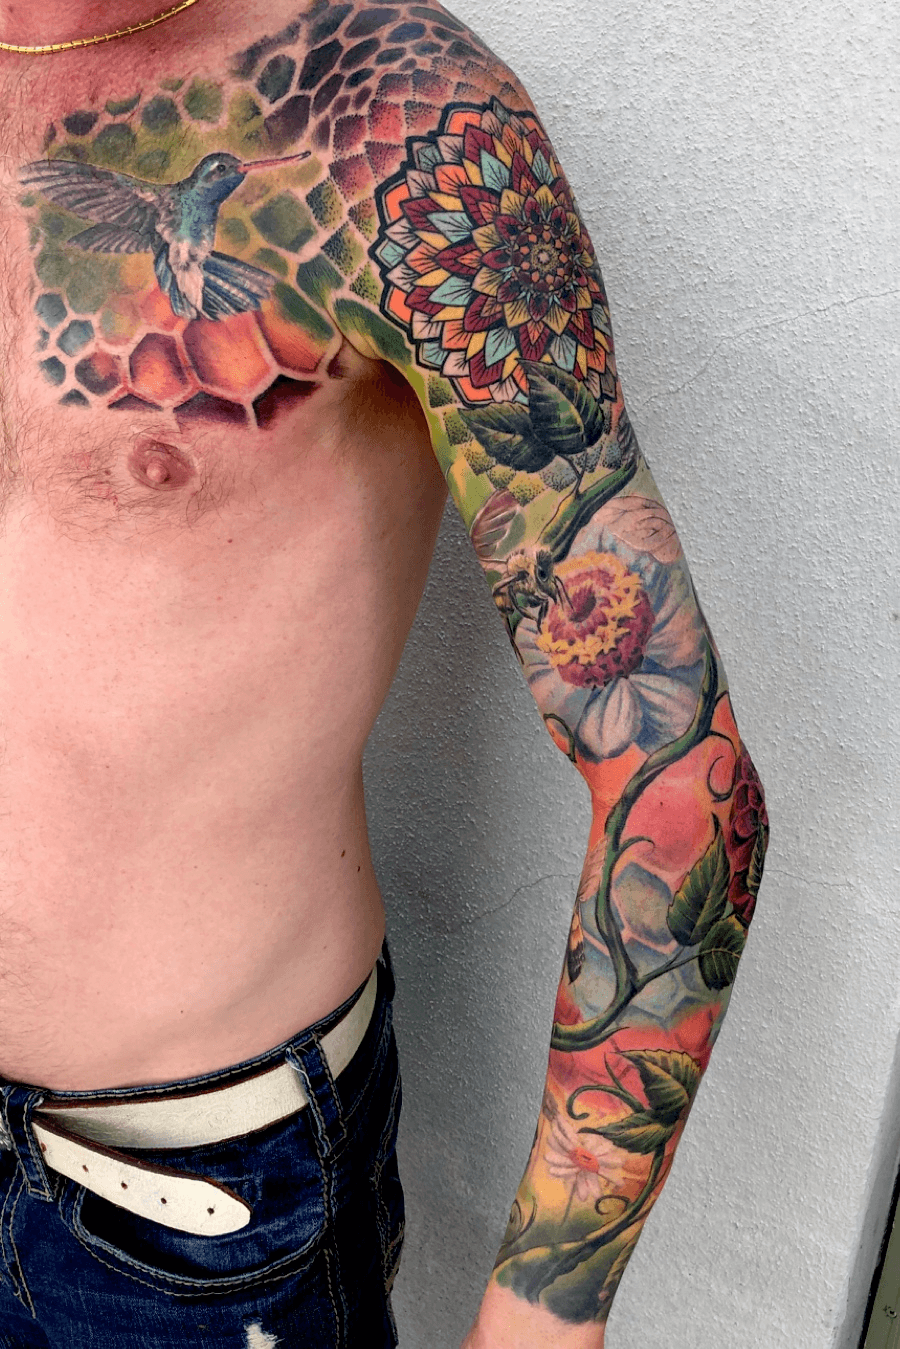 Buzzing  Fun  Bee Tattoo Ideas By Tattoo Designers  Tattoo Stylist